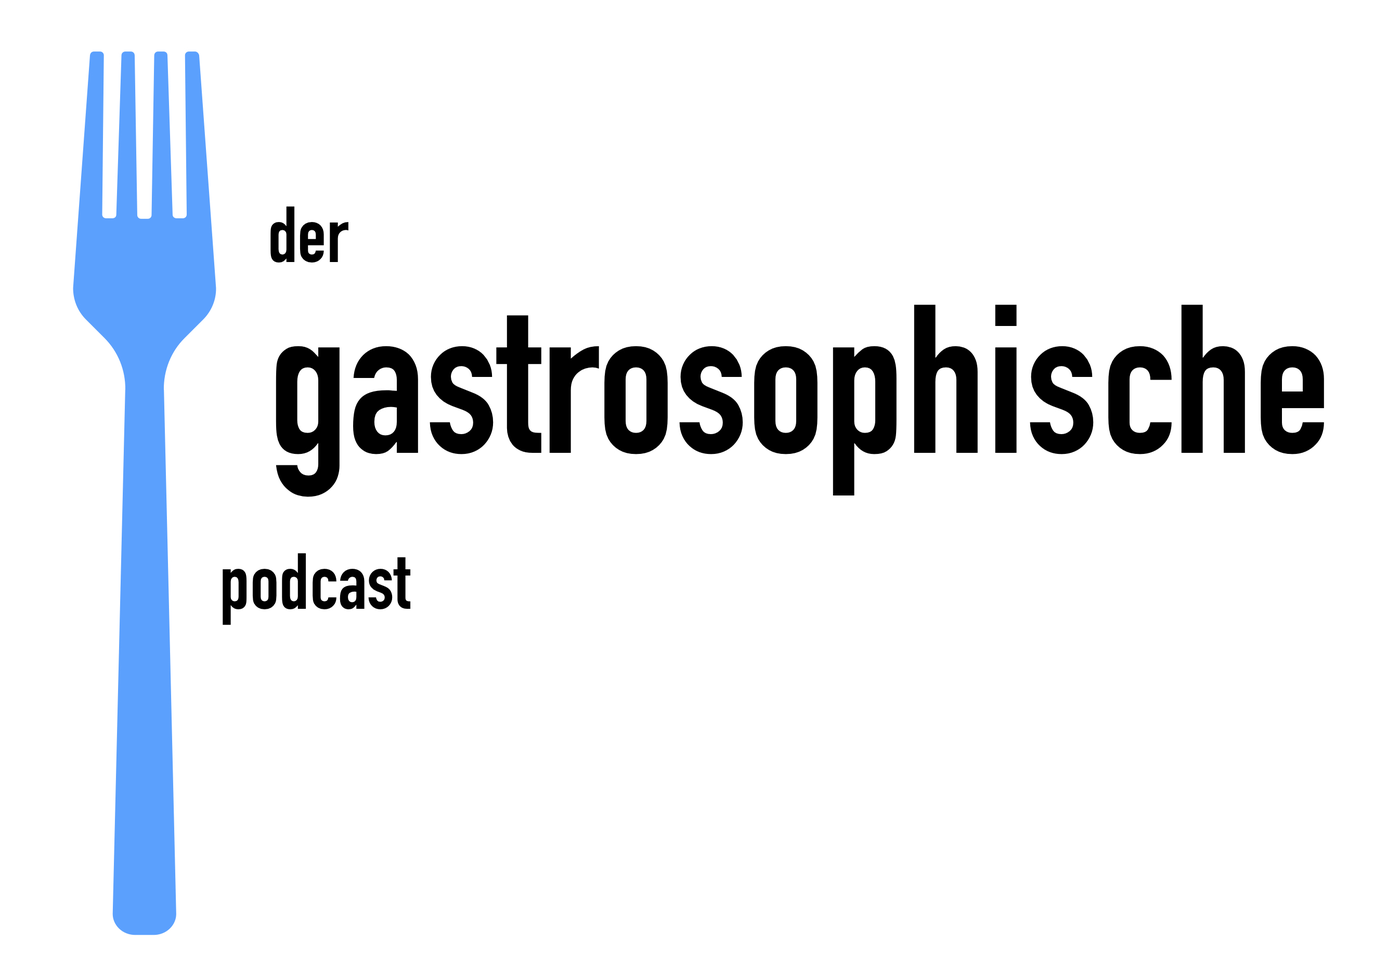 Der gastrosophische Podcast